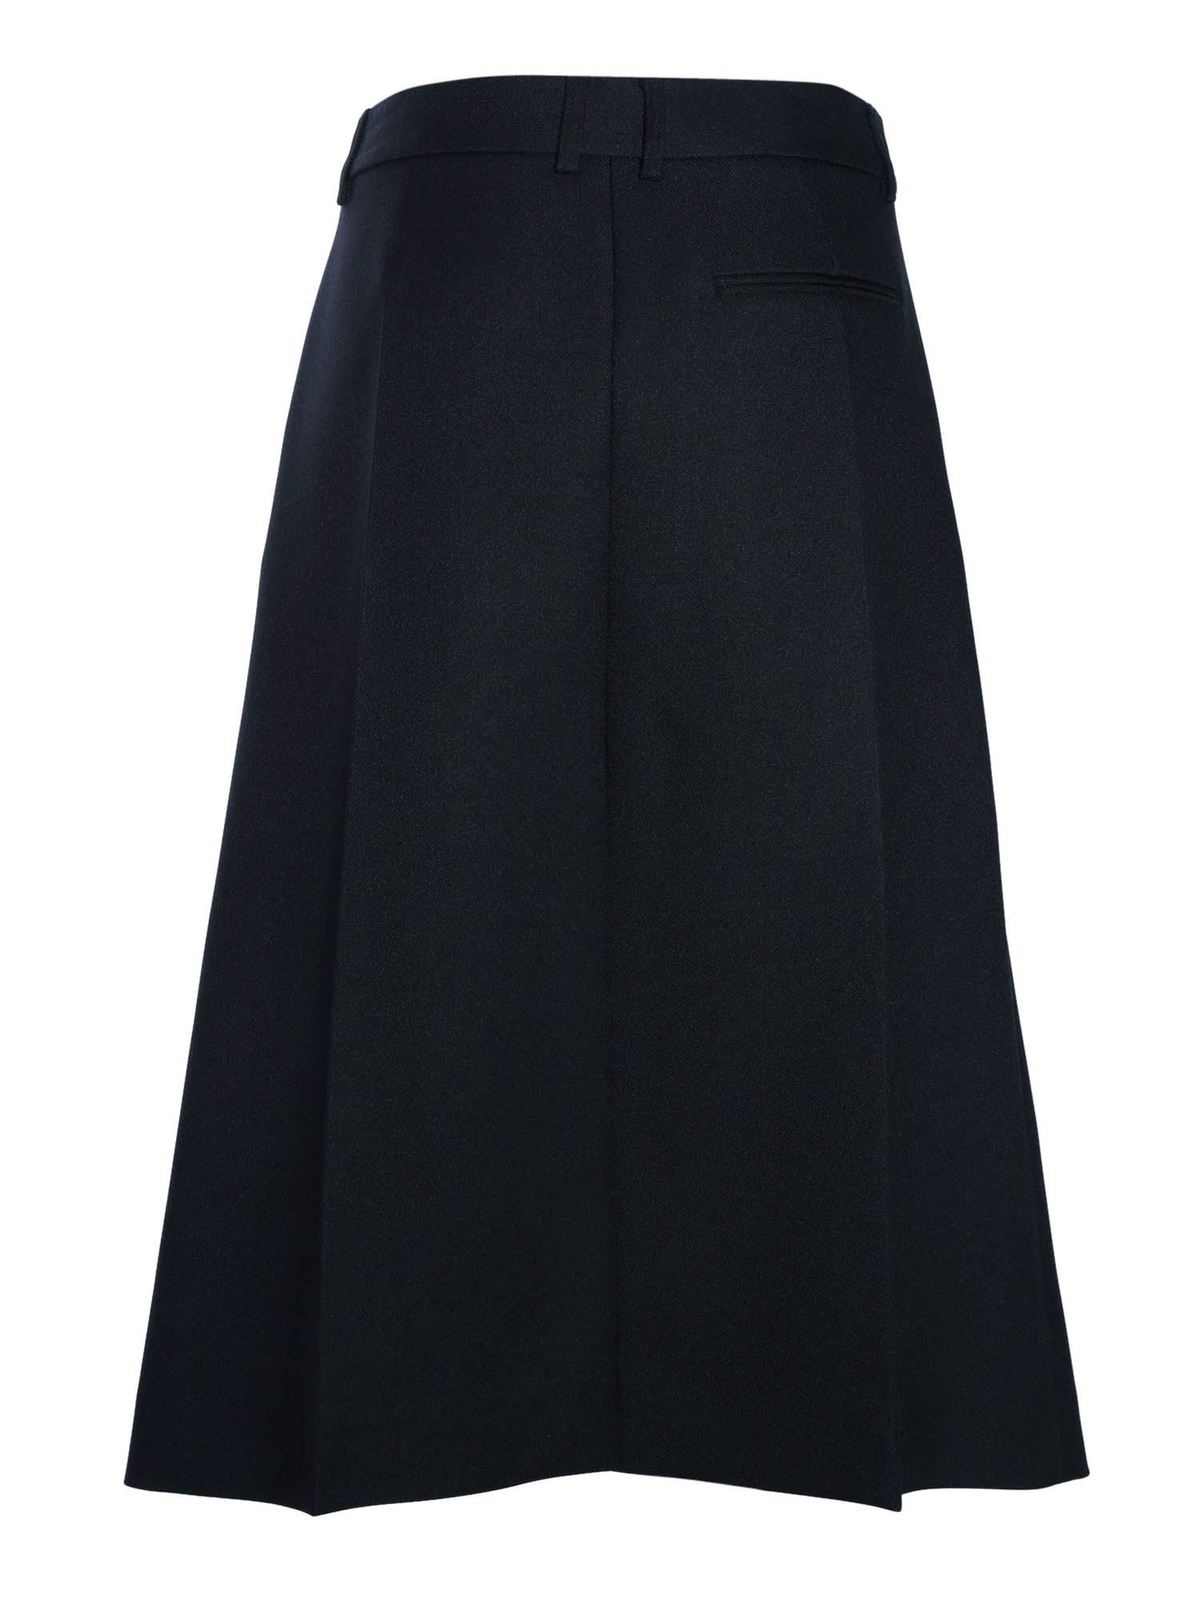 Stella Mccartney - Technical fabric skirt in black - Knee length skirts ...